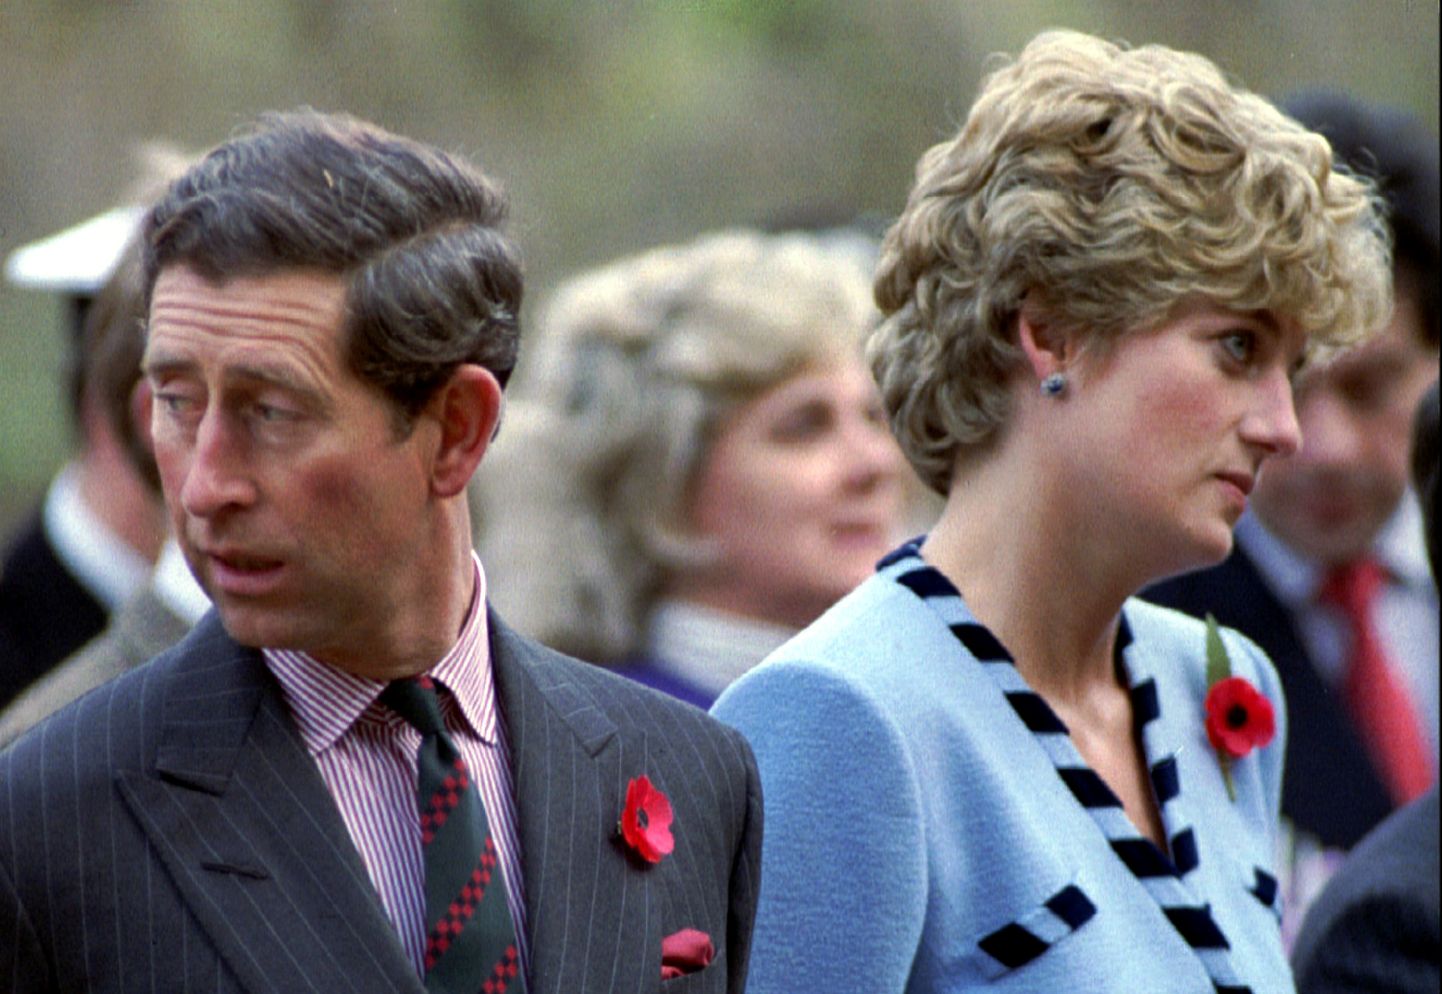 Siin pildil vaatavad prints Charlees ja printsess Diana juba erinevatesse suundadesse